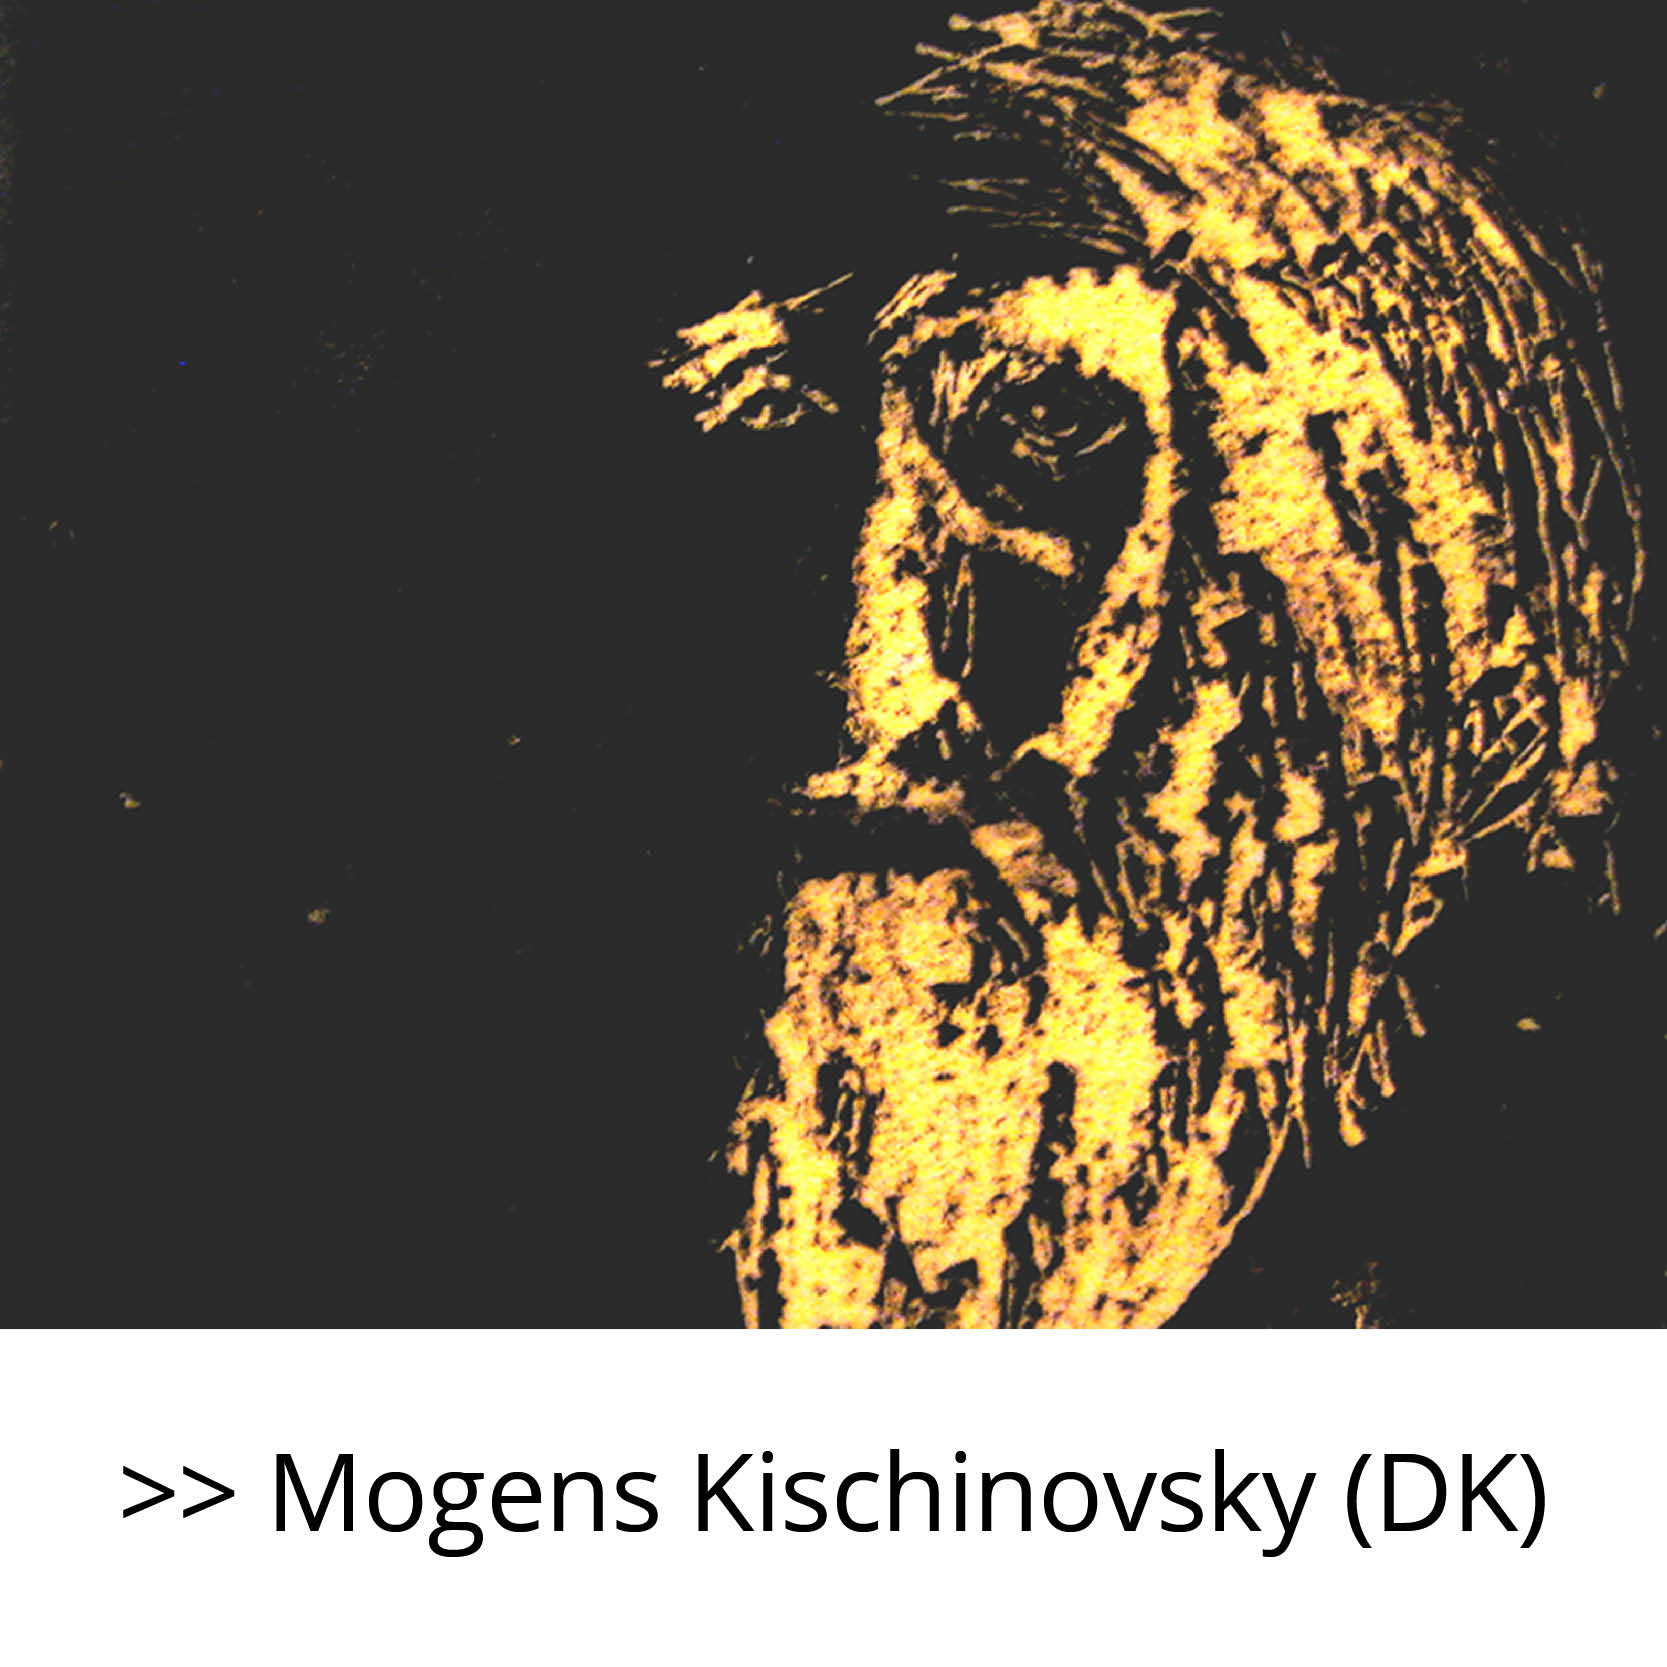 Mogens_Kischinovsky_(DK)